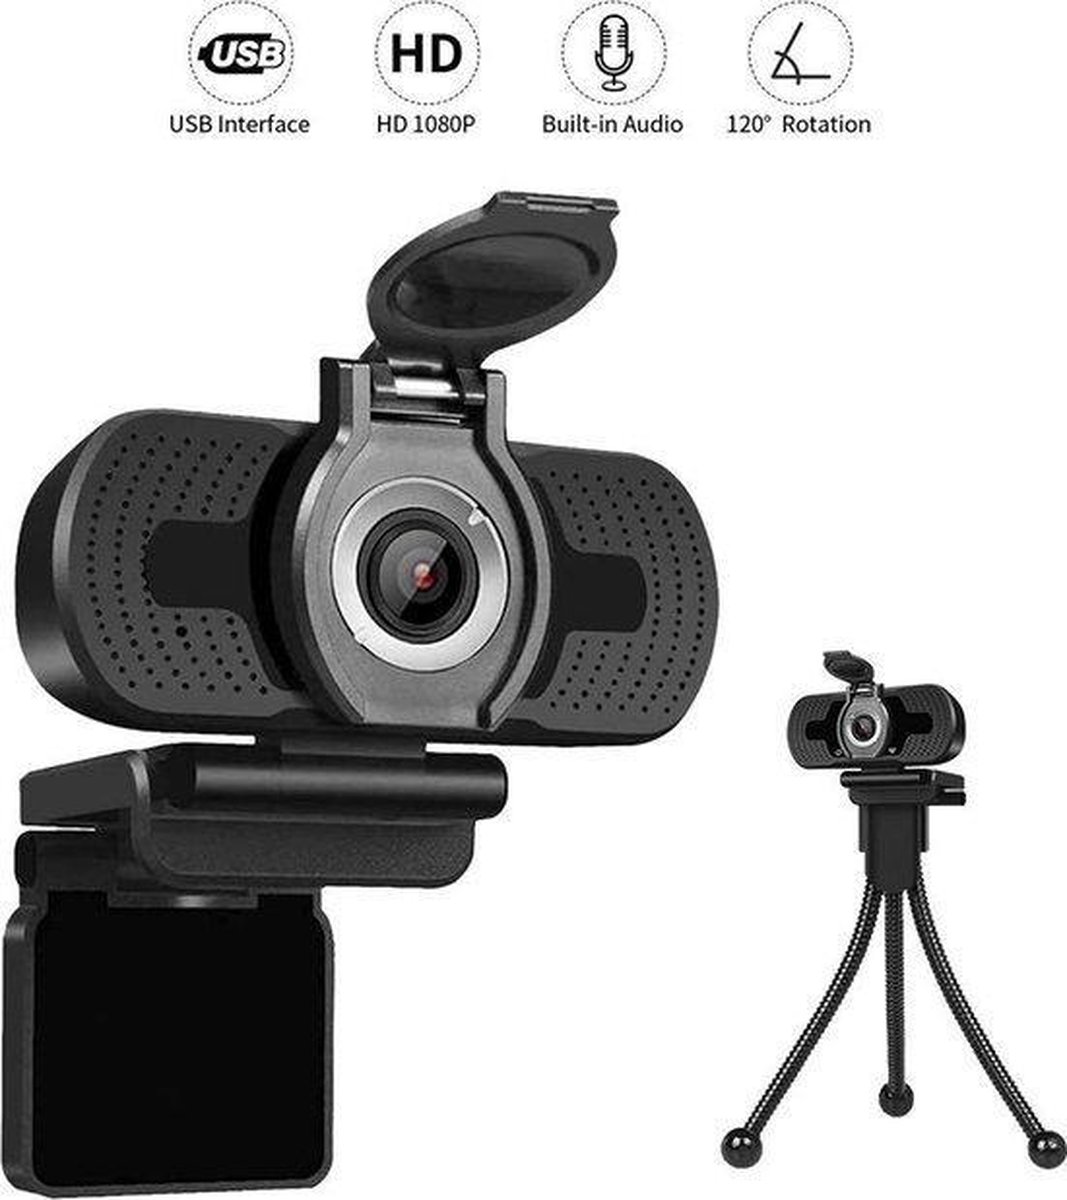 Professionele webcam Full HD 1080p met Gratis statief & cover - Autofocus - Microfoon - USB voor alle PCs - leesgeven-Gamen-vergadering-Windows & Mac - Zwart.